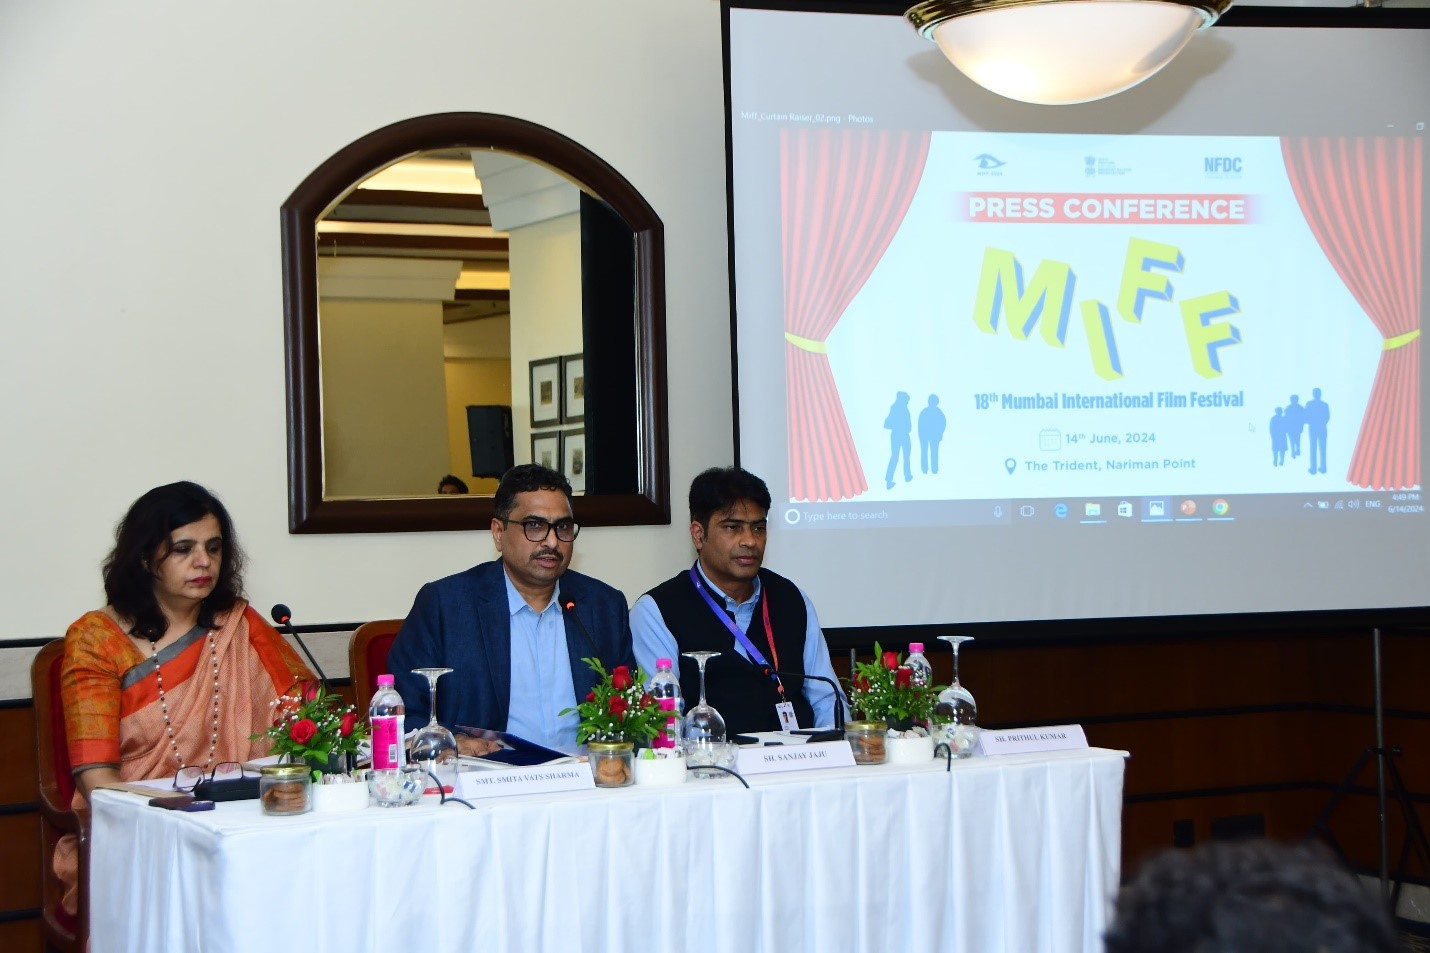 18वा मुंबई आंतरराष्ट्रीय चित्रपट महोत्सव प्रेक्षकांना भुरळ घालण्यासाठी सज्ज: देशातील पाच शहरांमध्ये मिळणार अविस्मरणीय अनुभव